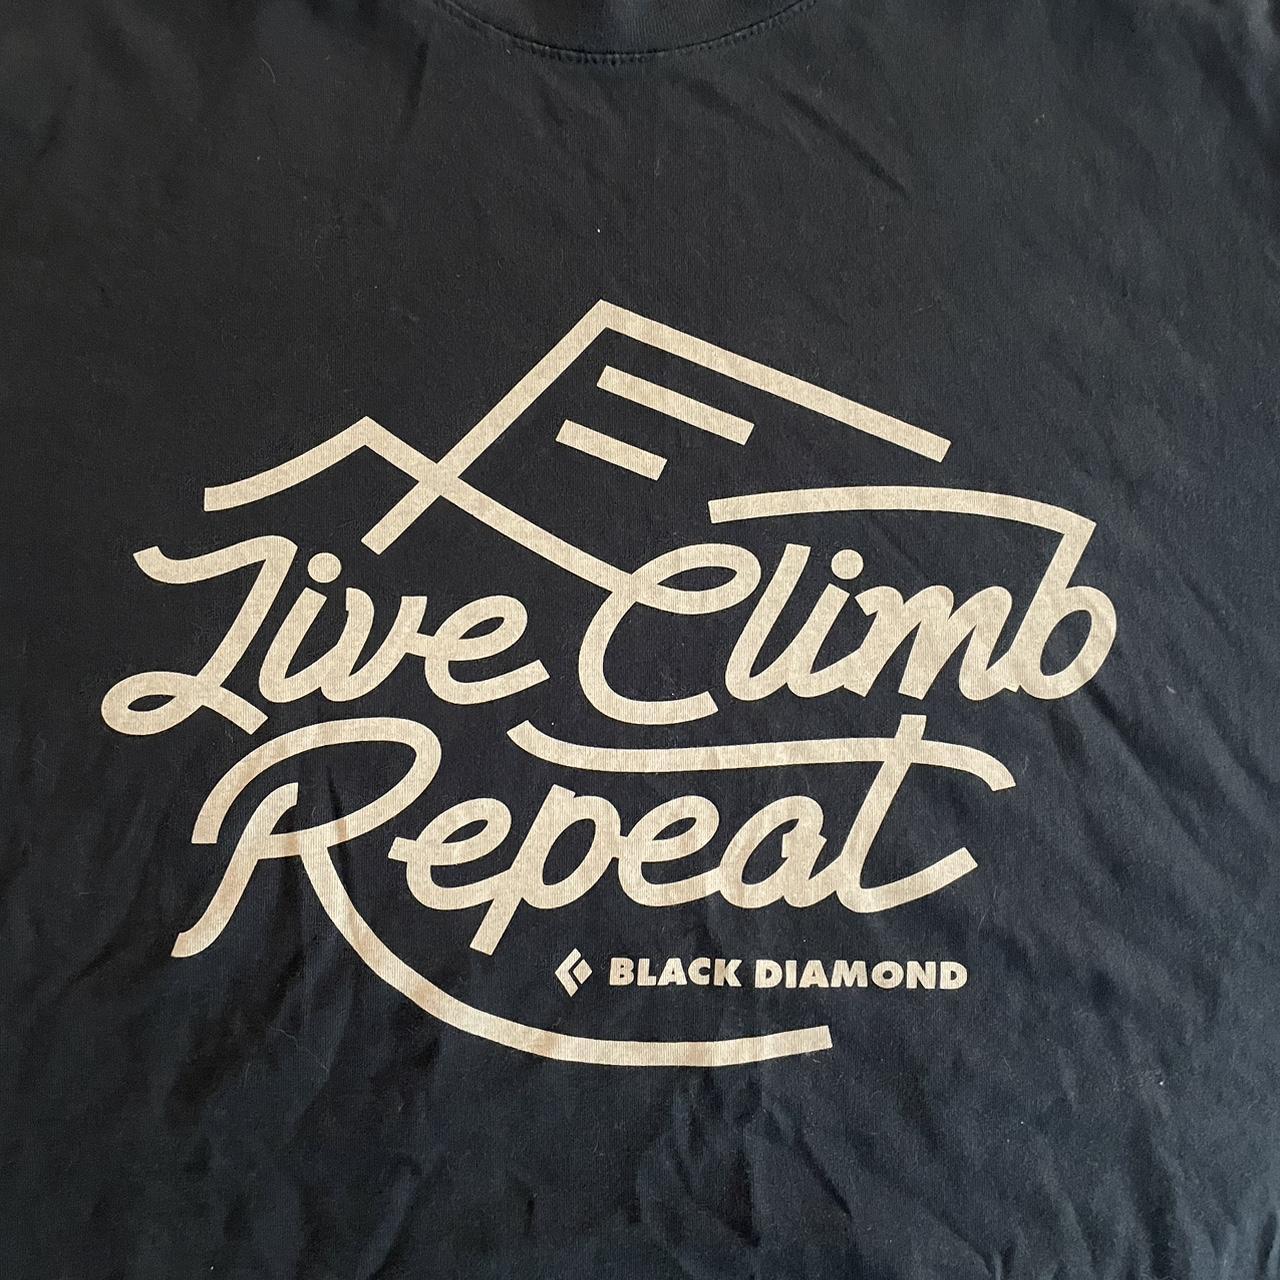 Black Diamond Men's Black T-shirt (2)